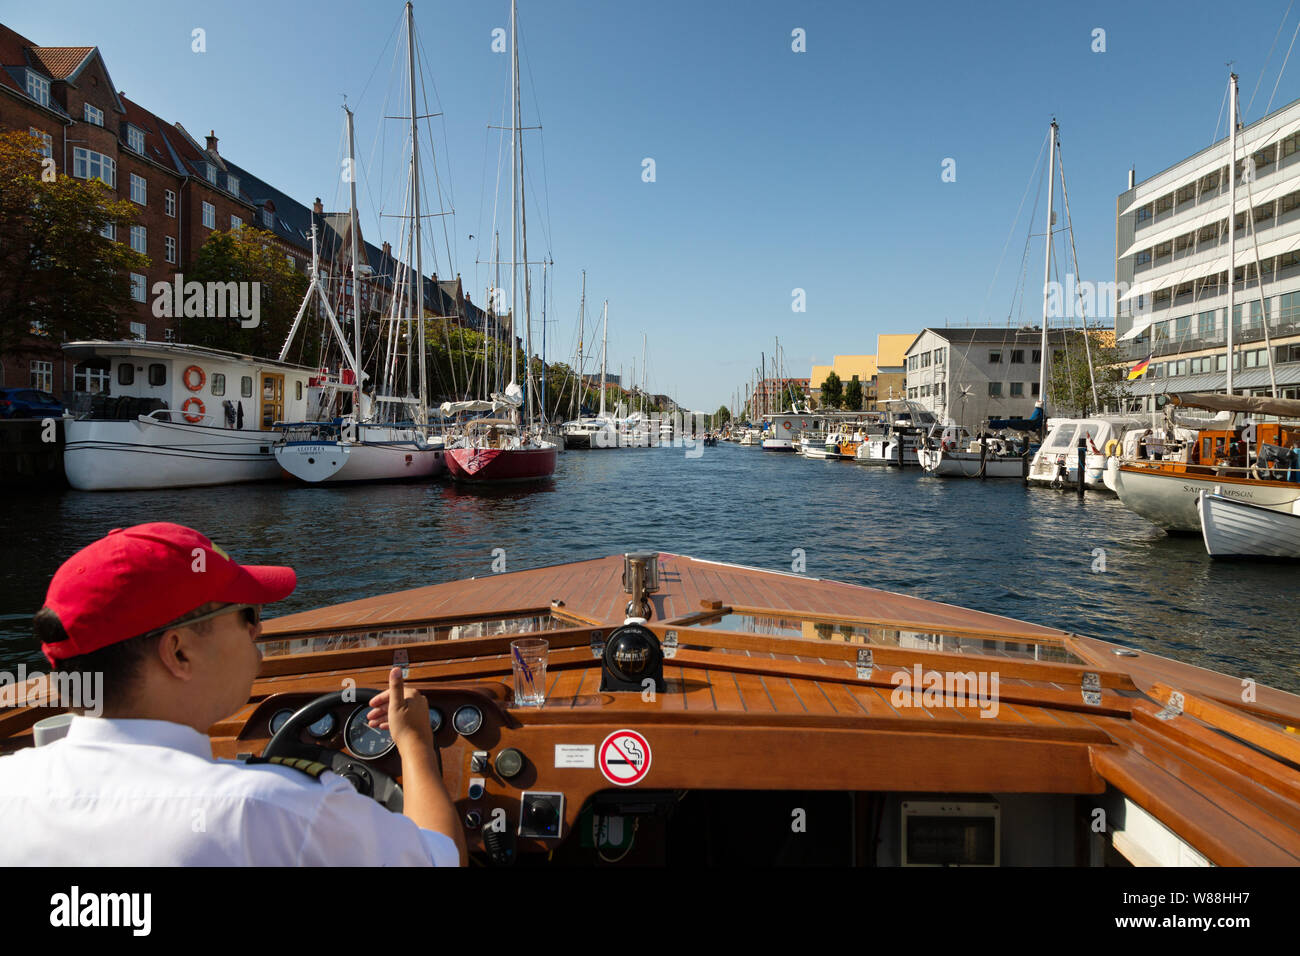 Christianshavn Copenhagen Denmark - canal scene on a canal tour in summer, Christianshavn, Copenhagen Scandinavia Europe Stock Photo